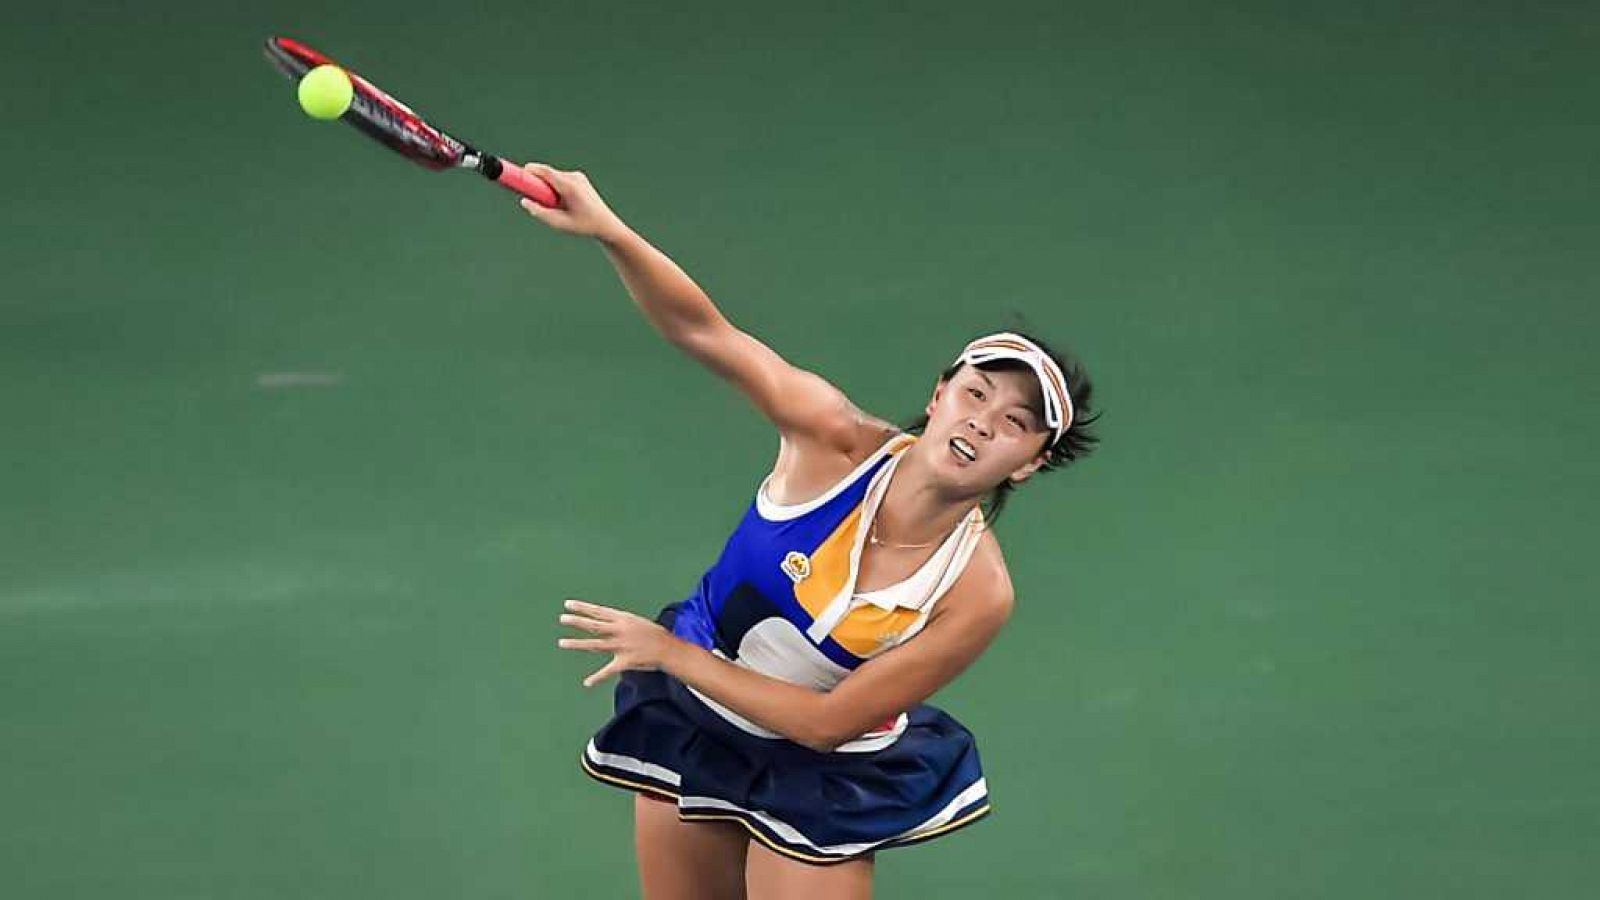 Tenis - WTA Torneo Tokio (Japón): K. Nara - C. García